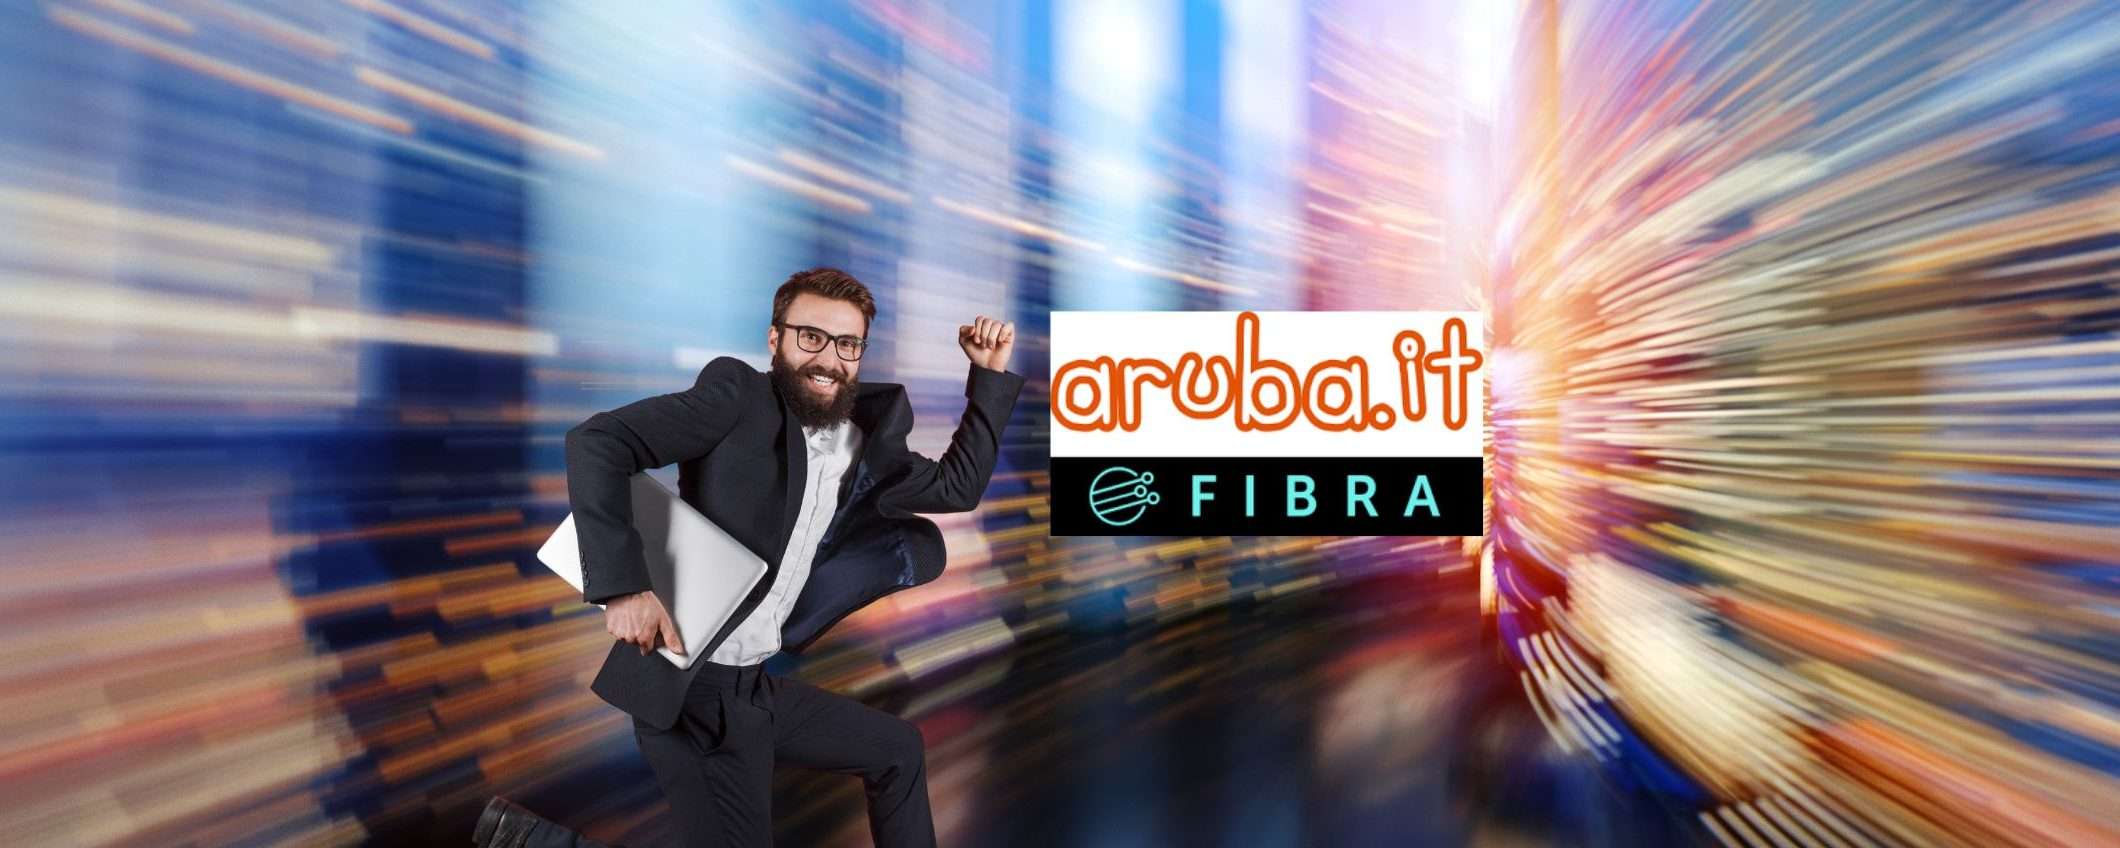 Aruba Fibra: velocità e prestazioni top da 17 € al mese